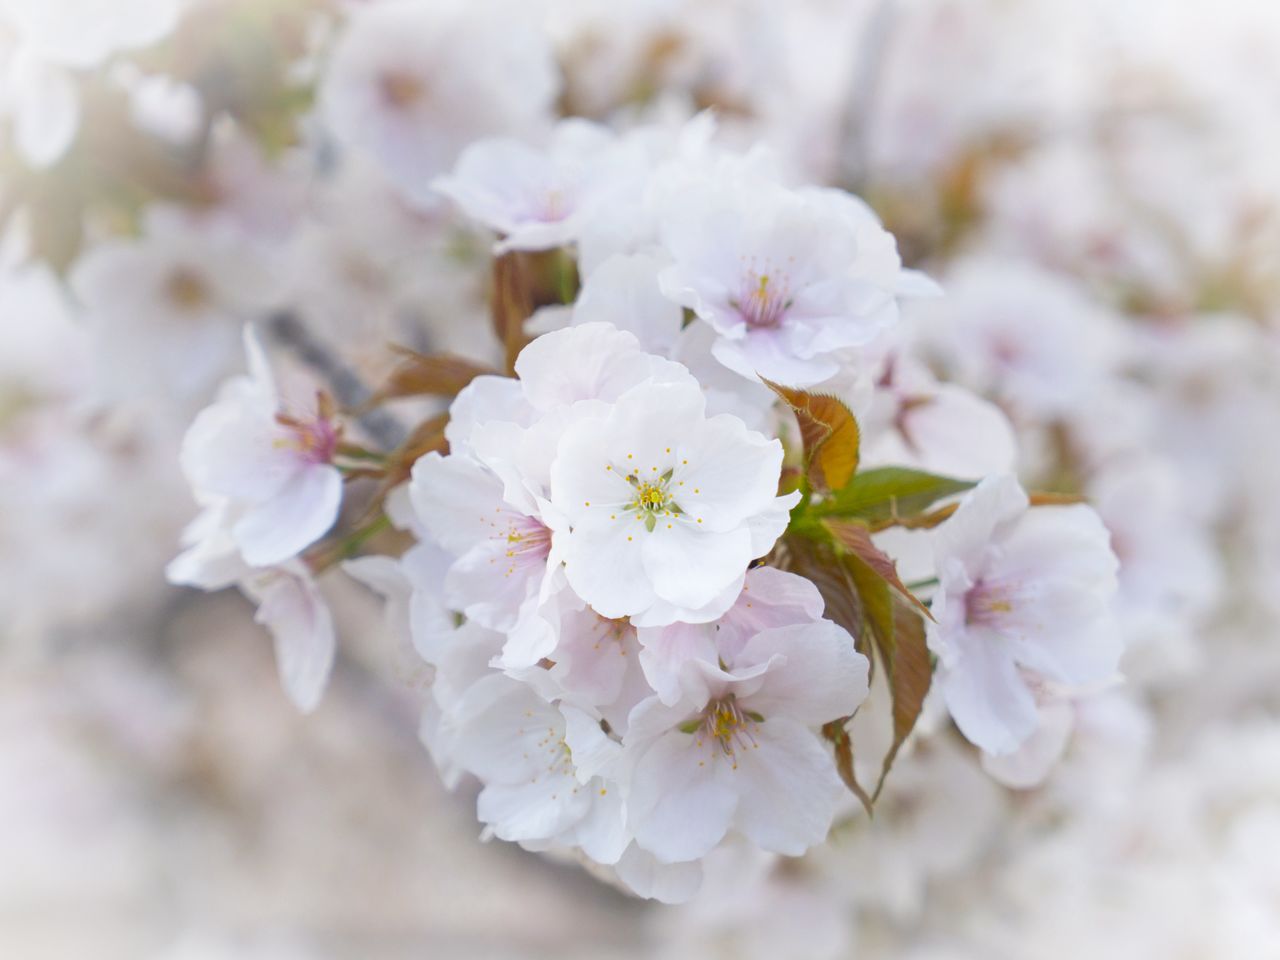 御室桜は、花が大ぶりの房となって咲く